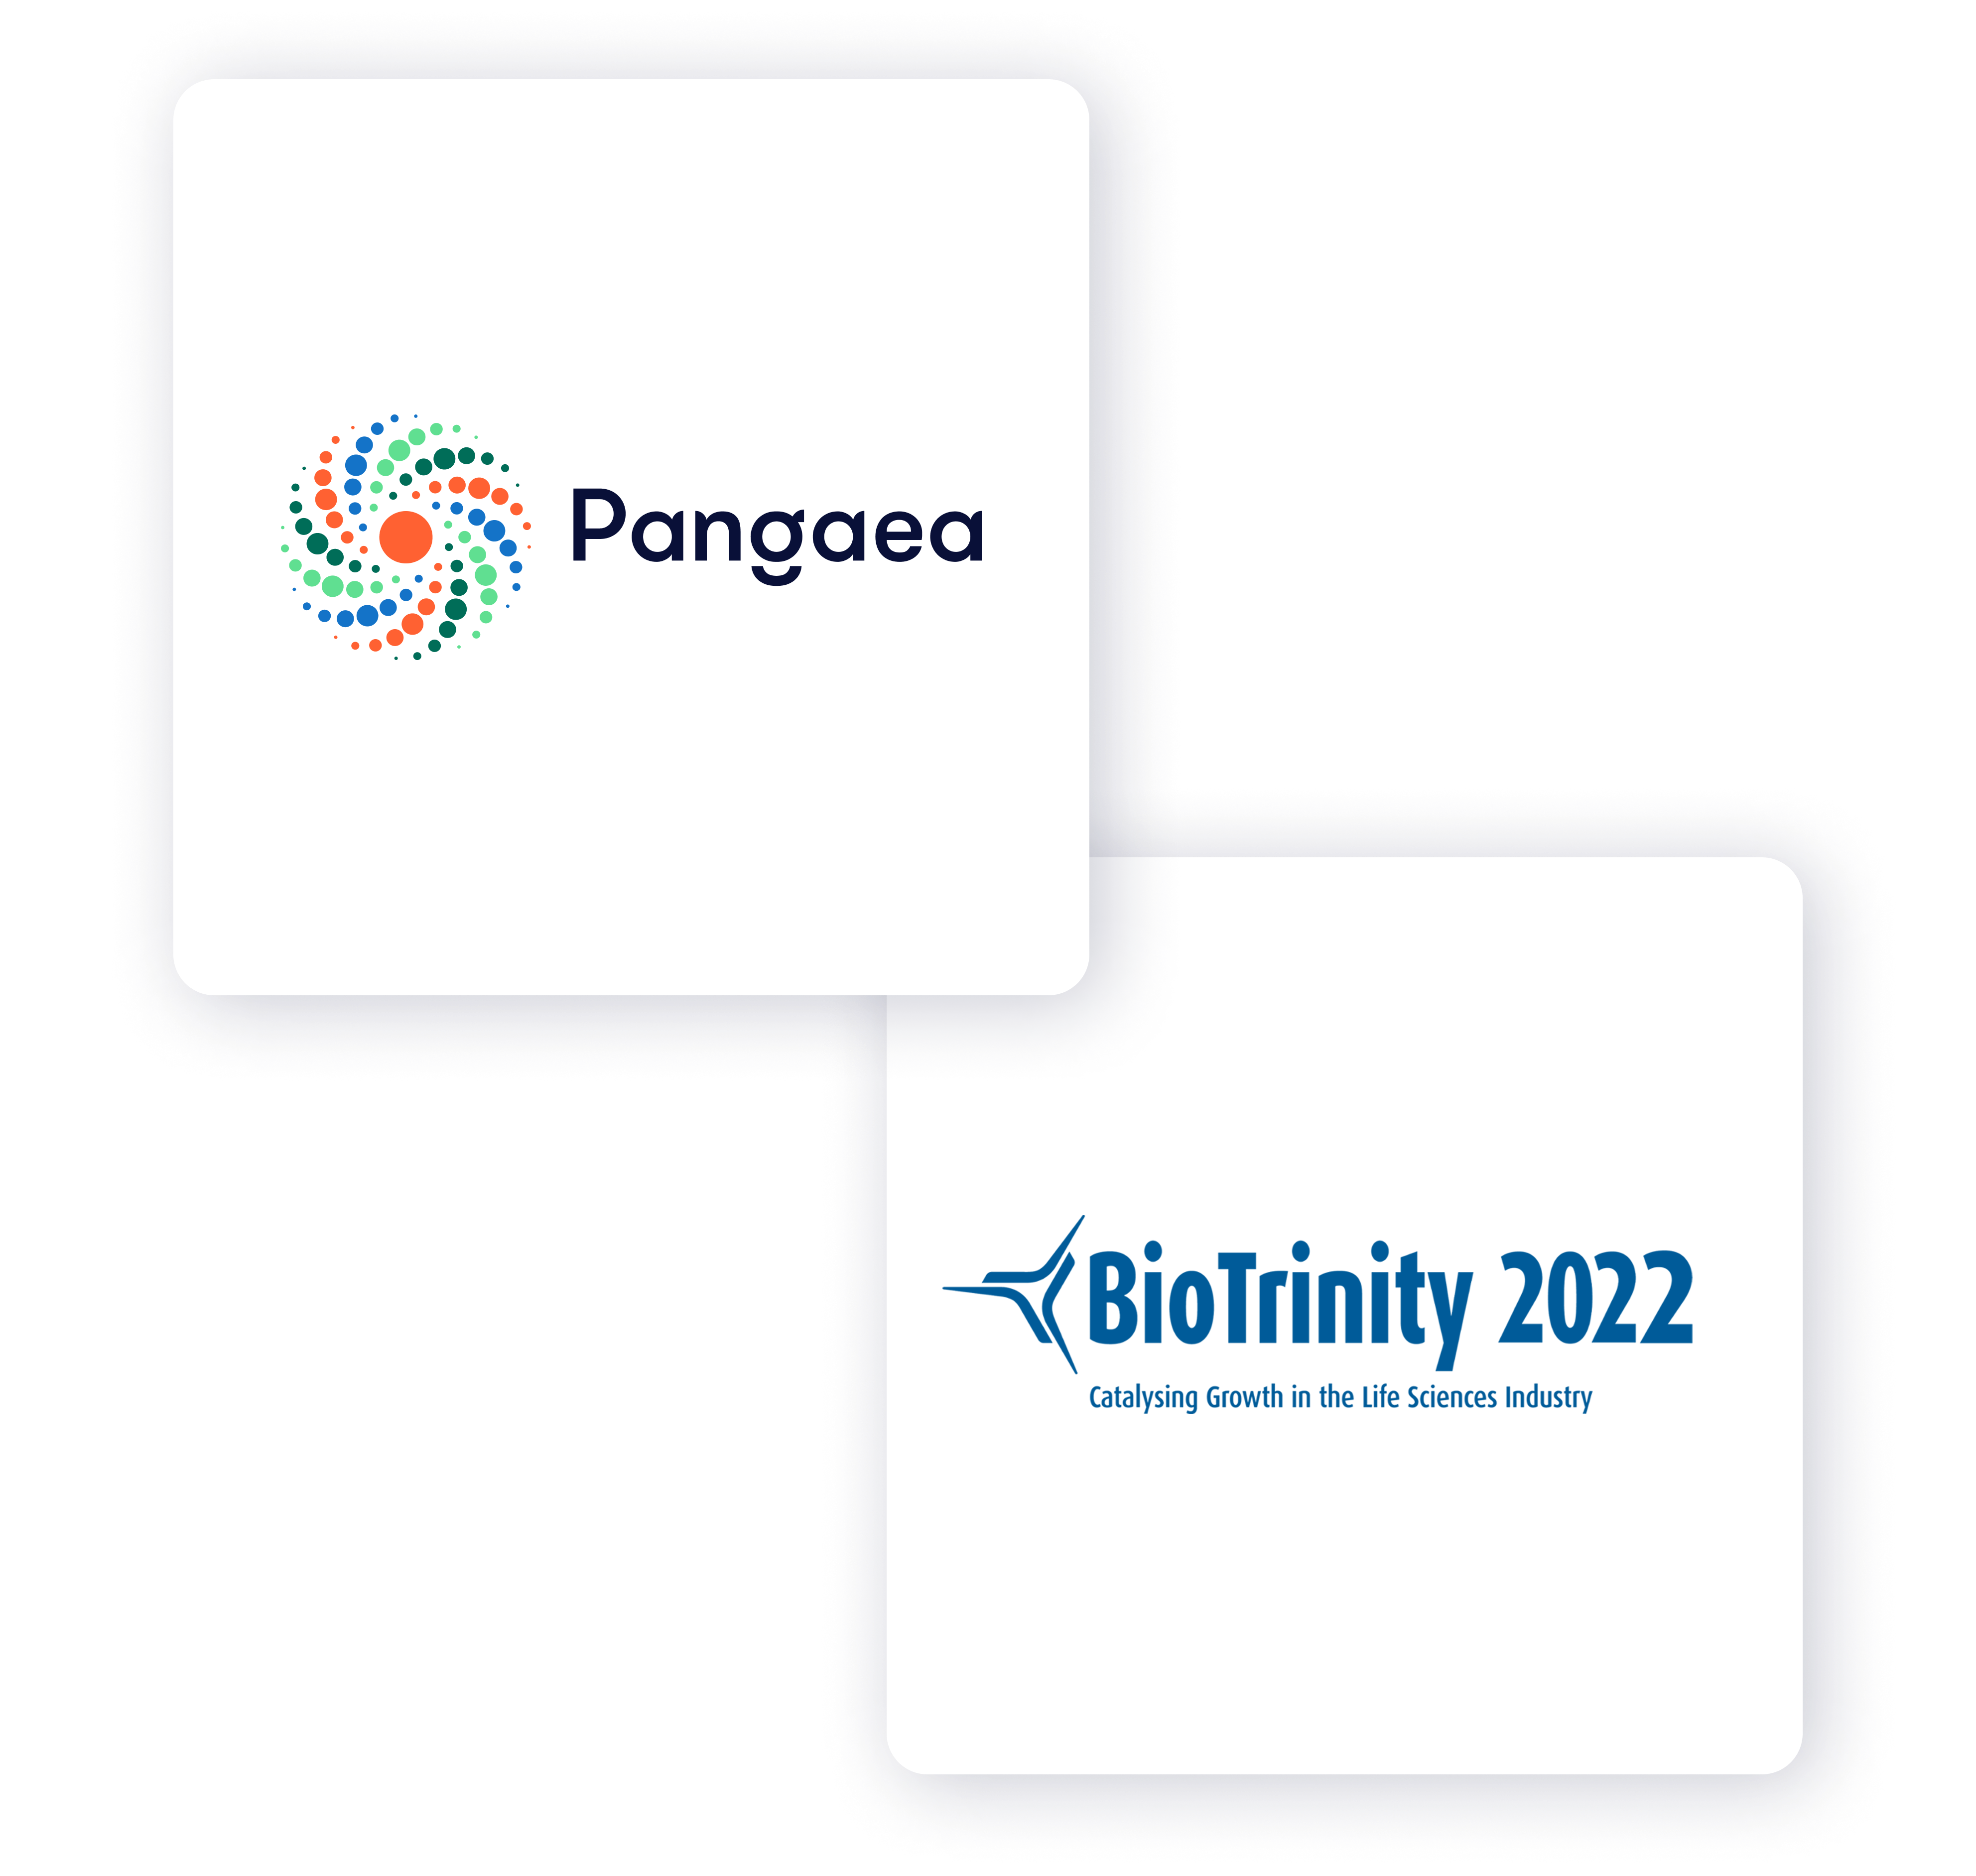 Pangaea and BioTrinity Logos